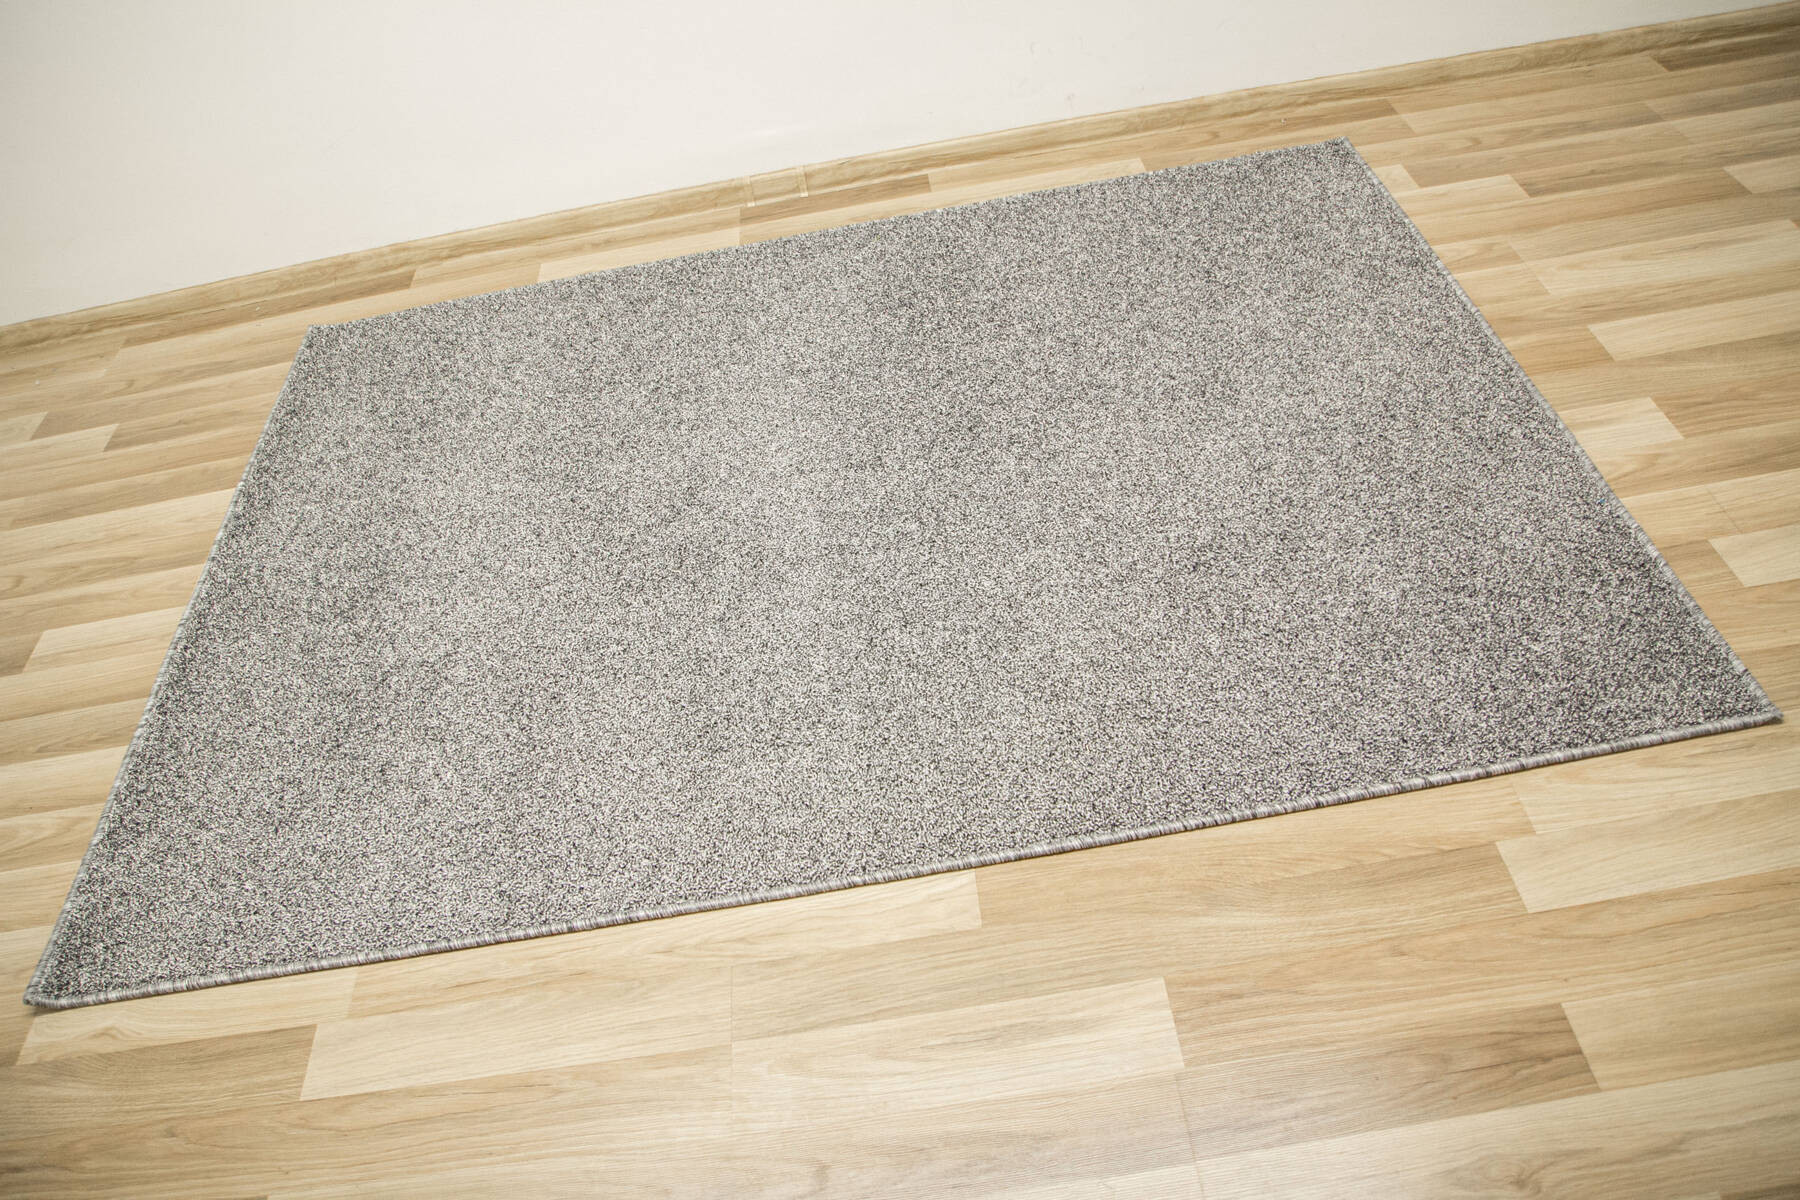 Metrážny koberec Sphinx - Special 177 strieborný / sivý / čierny